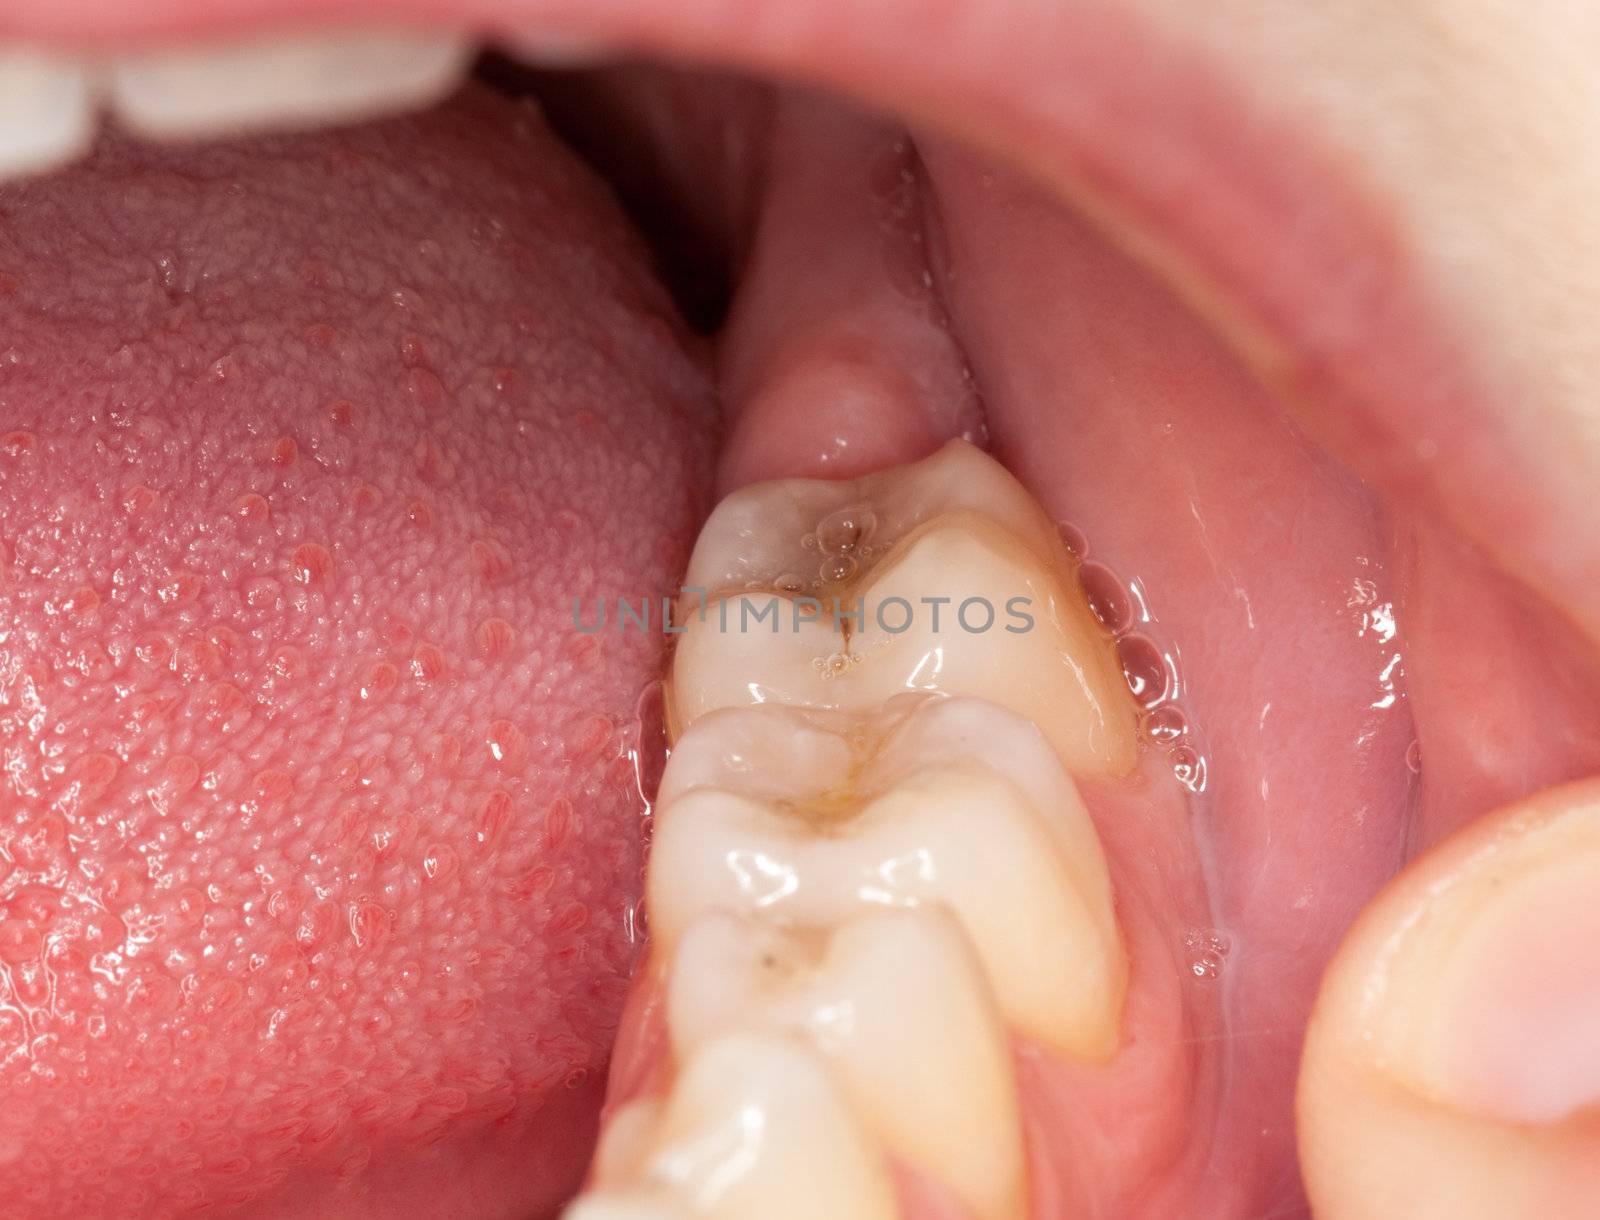 Macro image of filled teeth by steheap